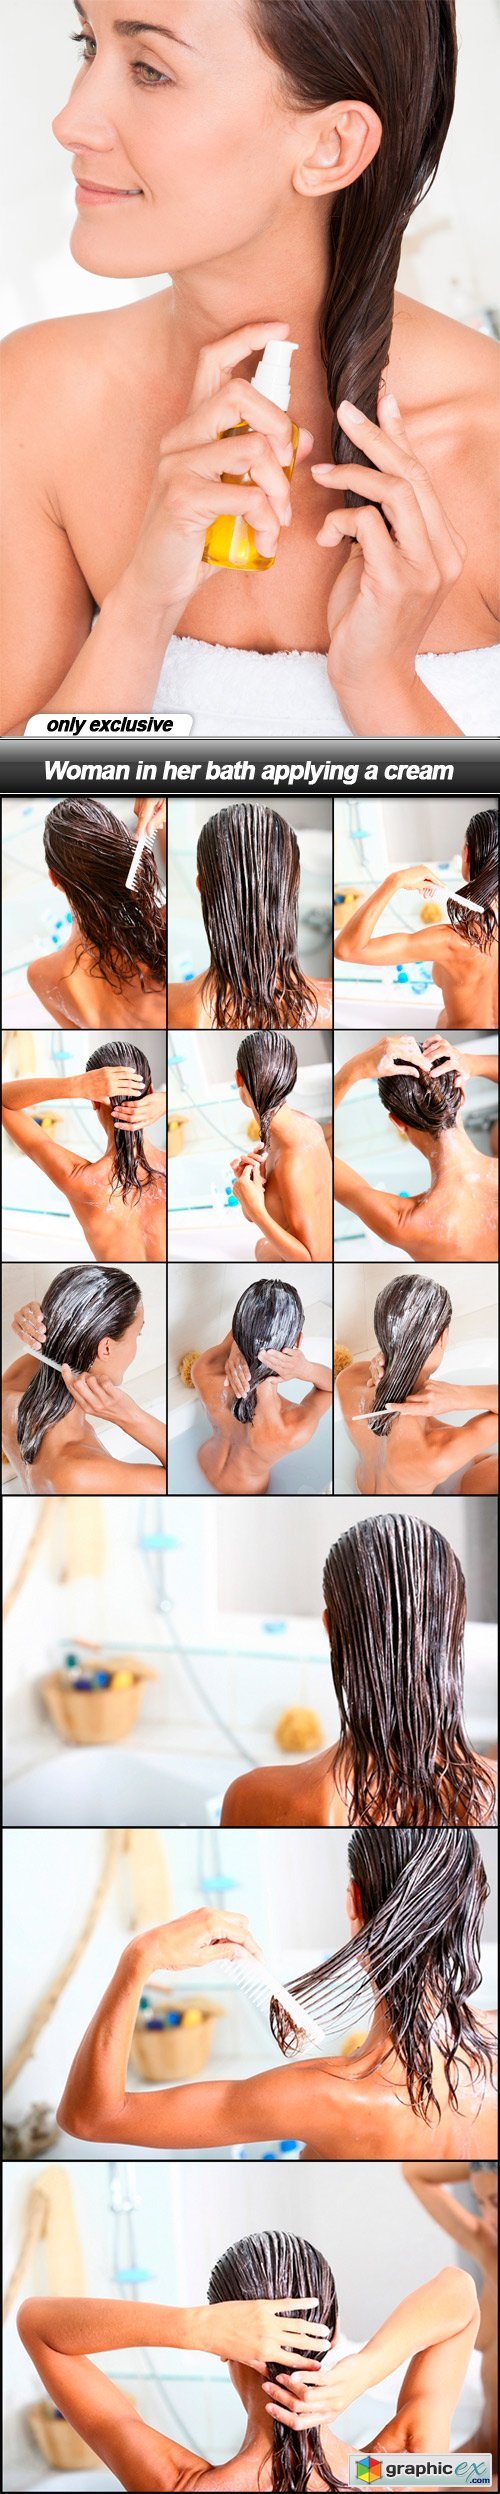 Woman in her bath applying a cream - 13 UHQ JPEG